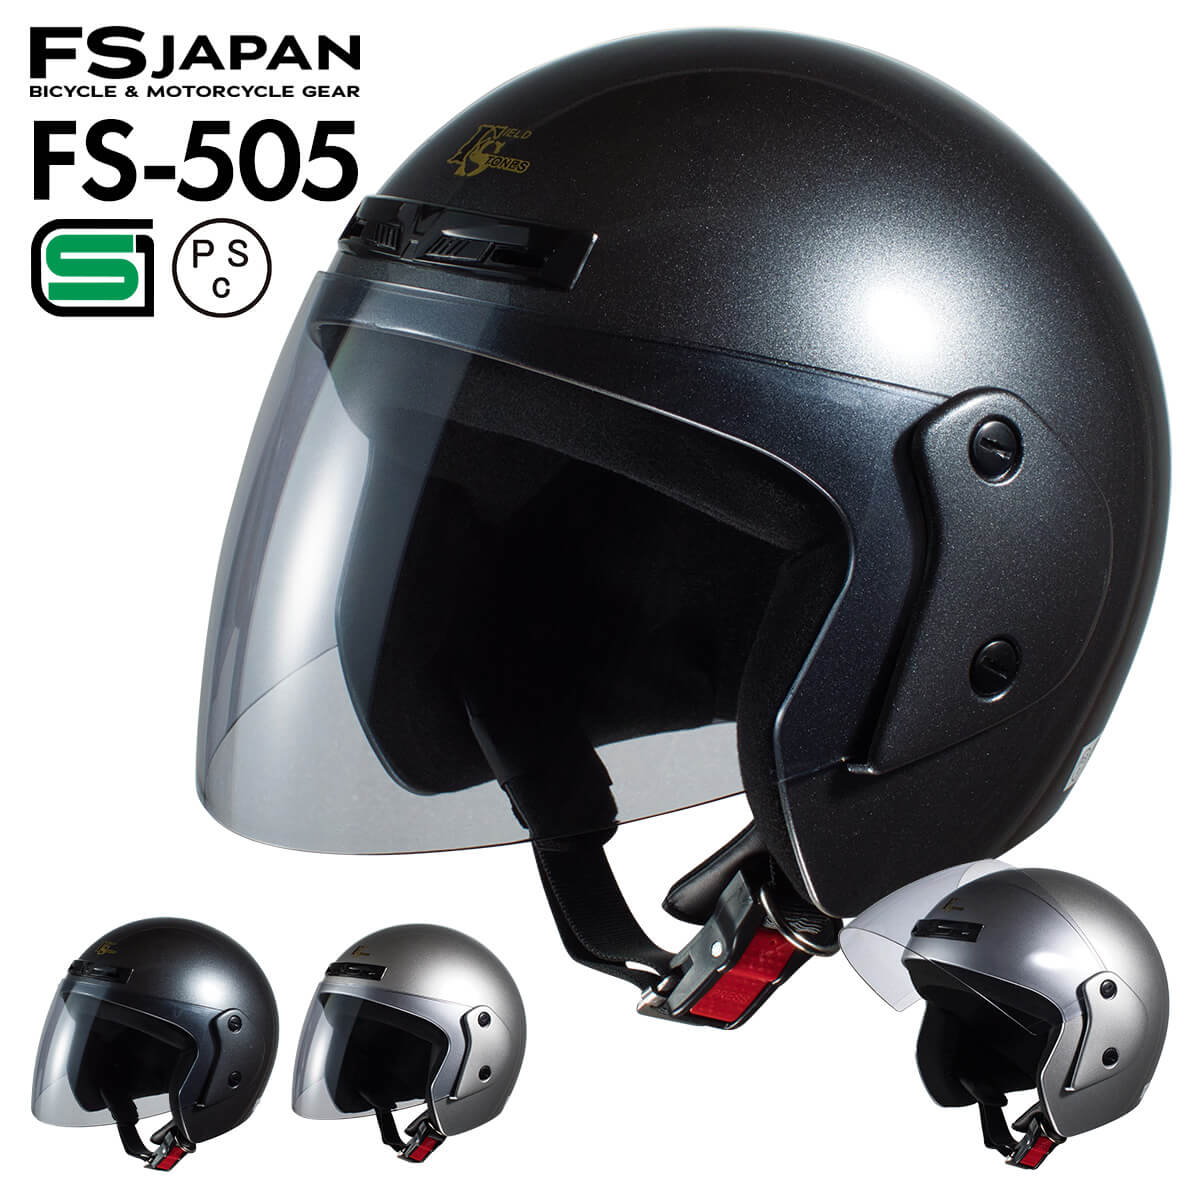  мотоцикл шлем jet свет затонированный защита FS-505 FS-JAPAN камень . association / SG стандарт PSC стандарт / мотоцикл шлем 